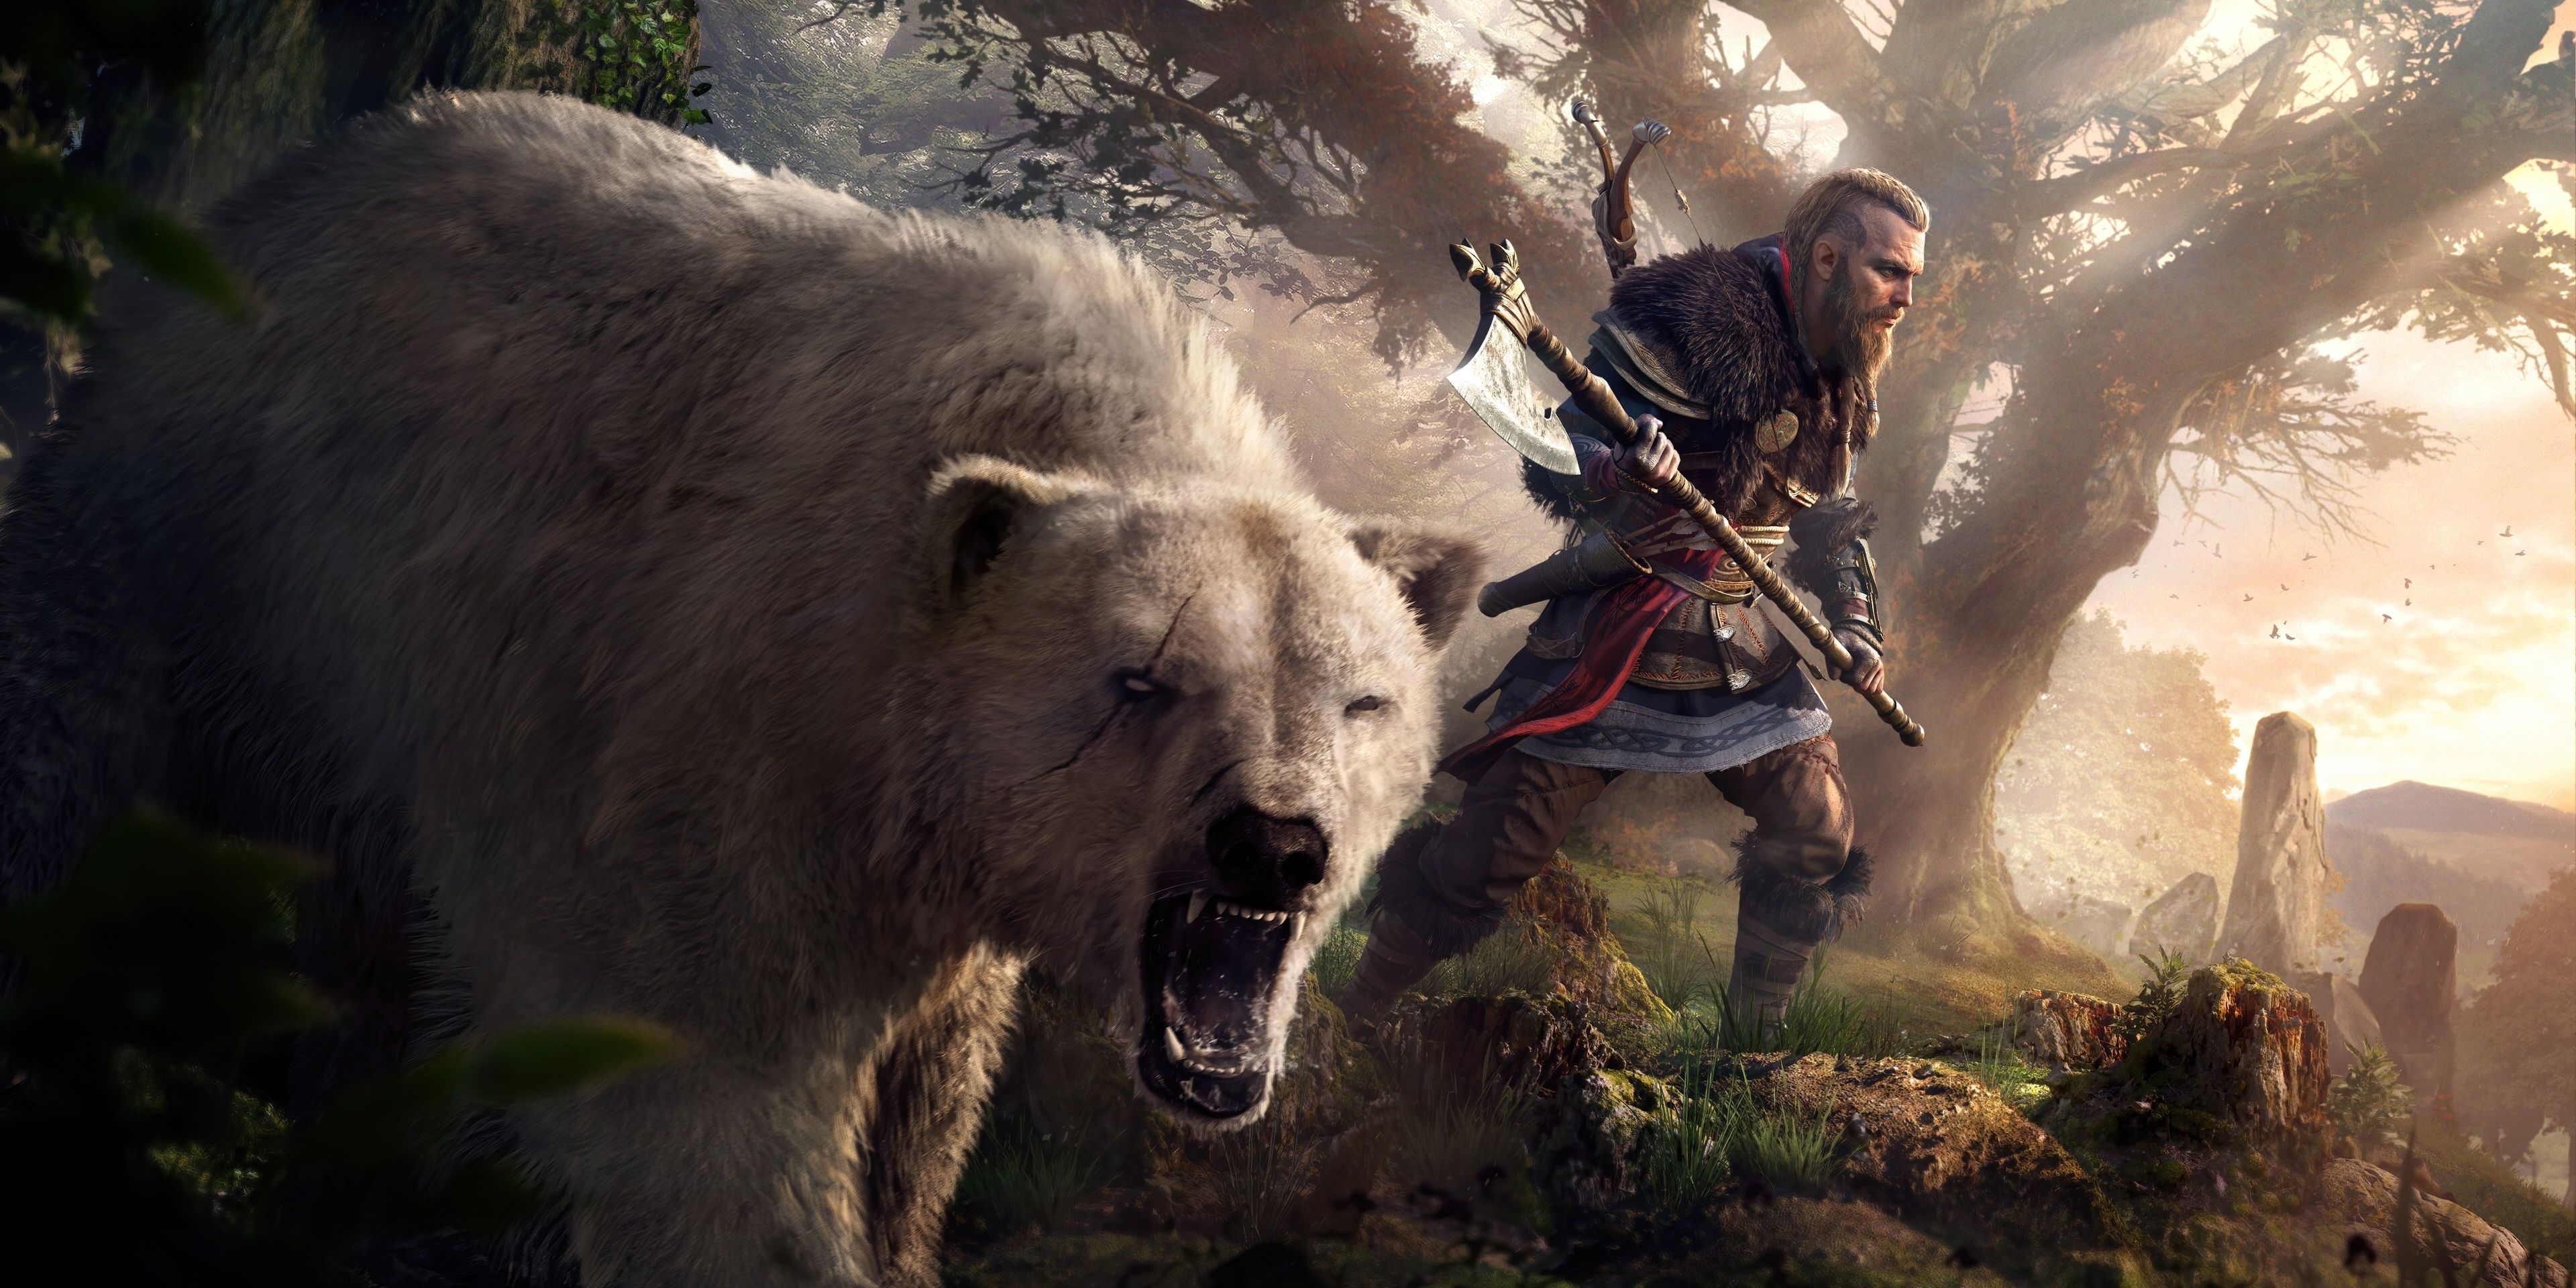 Best Bear Skills in Assassin's Creed Valhalla